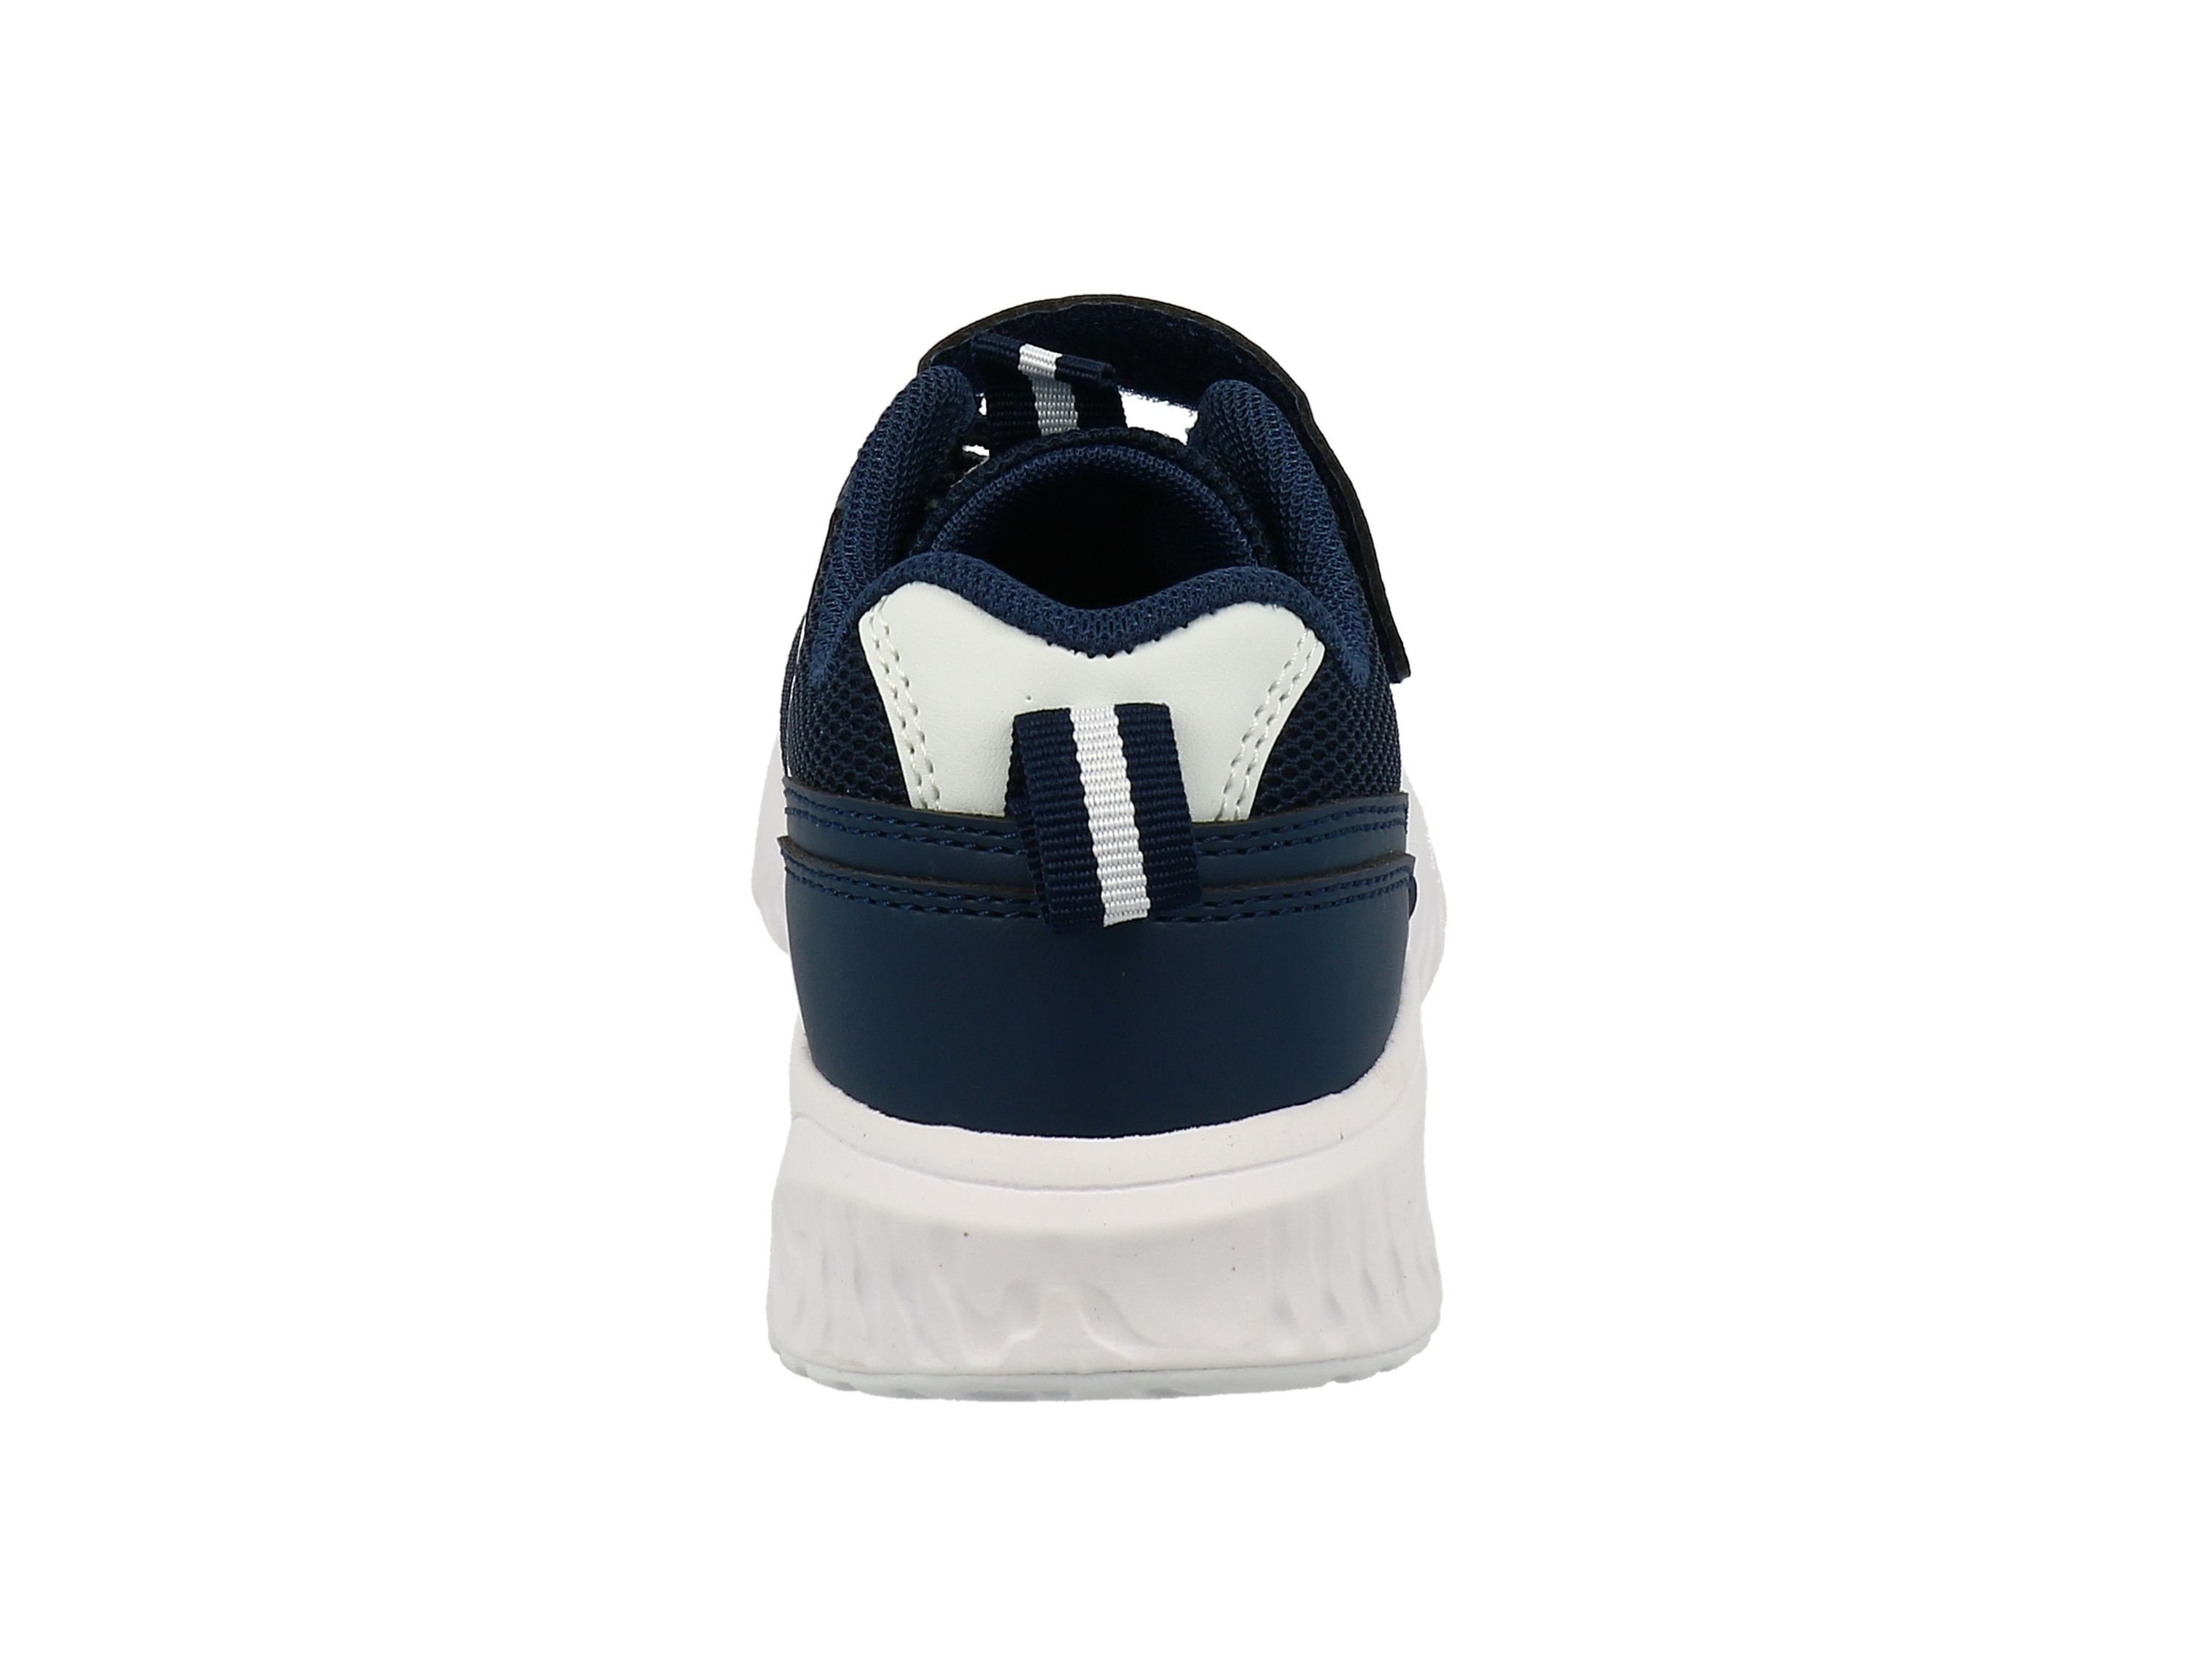 TOM TAILOR Tom Tailor Kinder sportlich Schnürhalbschuhe knallige Farben Sneaker navy-white 3274601